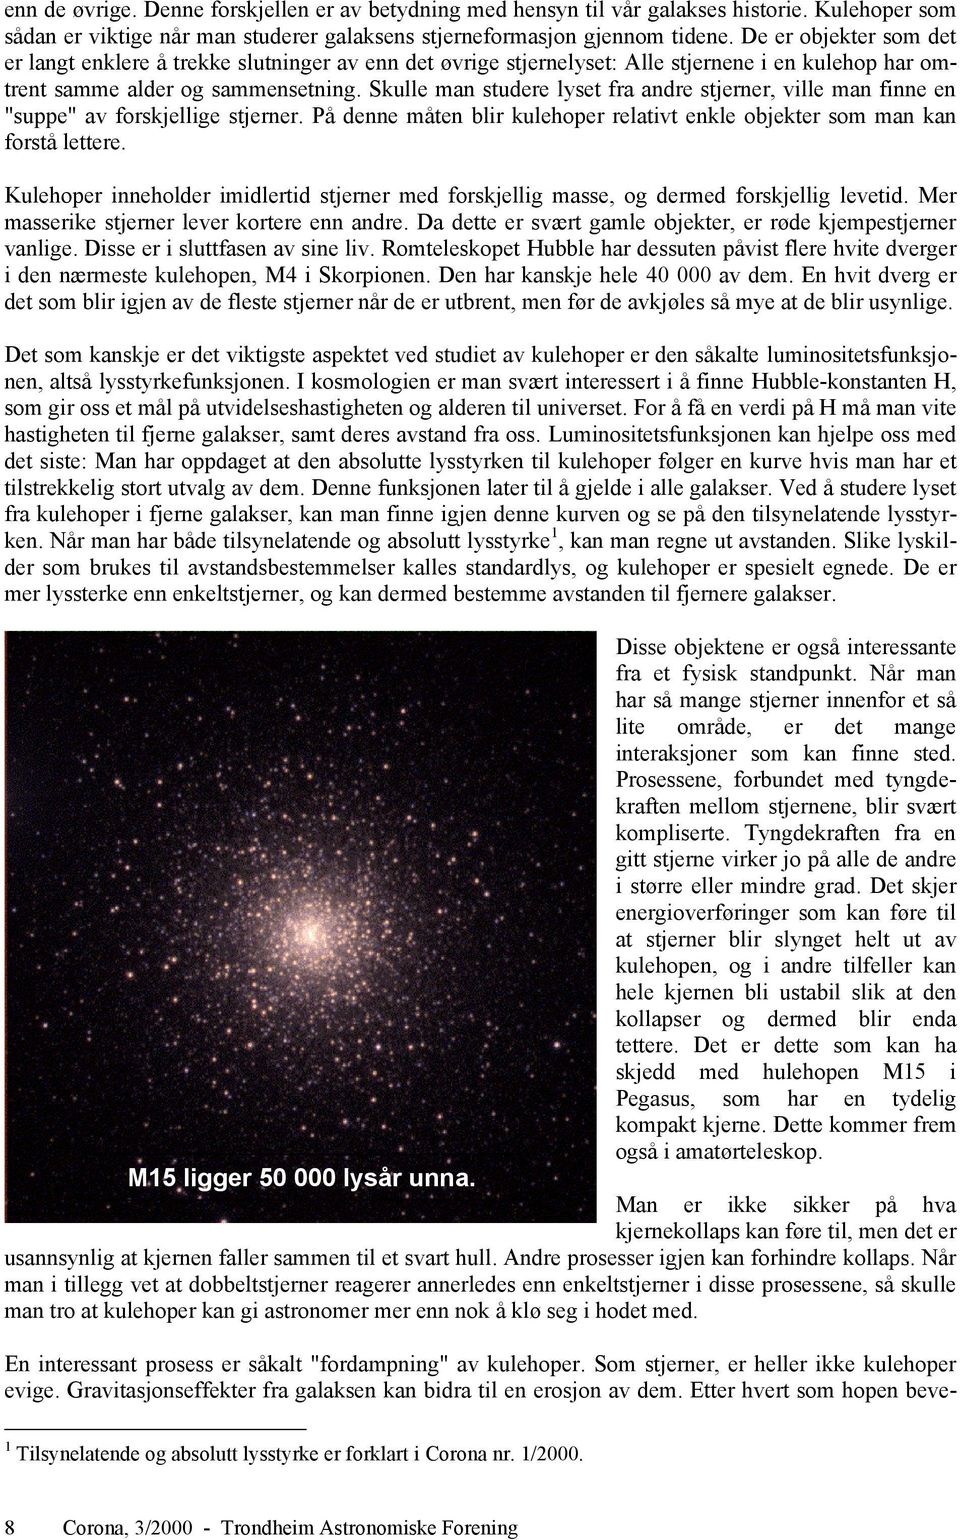 Skulle man studere lyset fra andre stjerner, ville man finne en "suppe" av forskjellige stjerner. På denne måten blir kulehoper relativt enkle objekter som man kan forstå lettere.